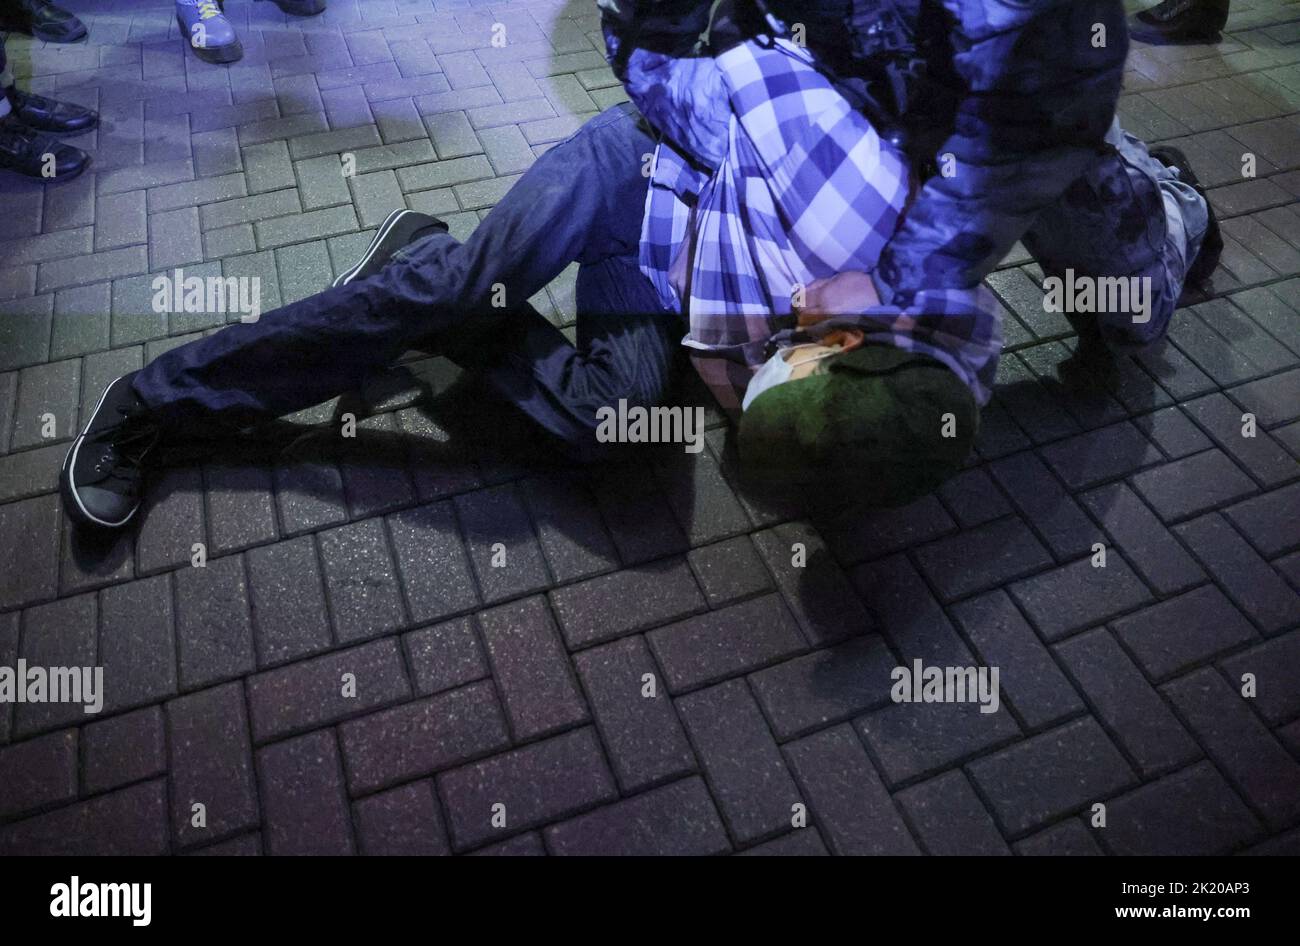 Russische Polizisten verhaften eine Person während einer nicht sanktionierten Kundgebung, nachdem Oppositionelle zu Straßenprotesten gegen die Mobilisierung von Reservisten aufgerufen hatten, die von Präsident Wladimir Putin angeordnet wurden, in Moskau, Russland, 21. September 2022. REUTERS/REUTERS-FOTOGRAF Stockfoto